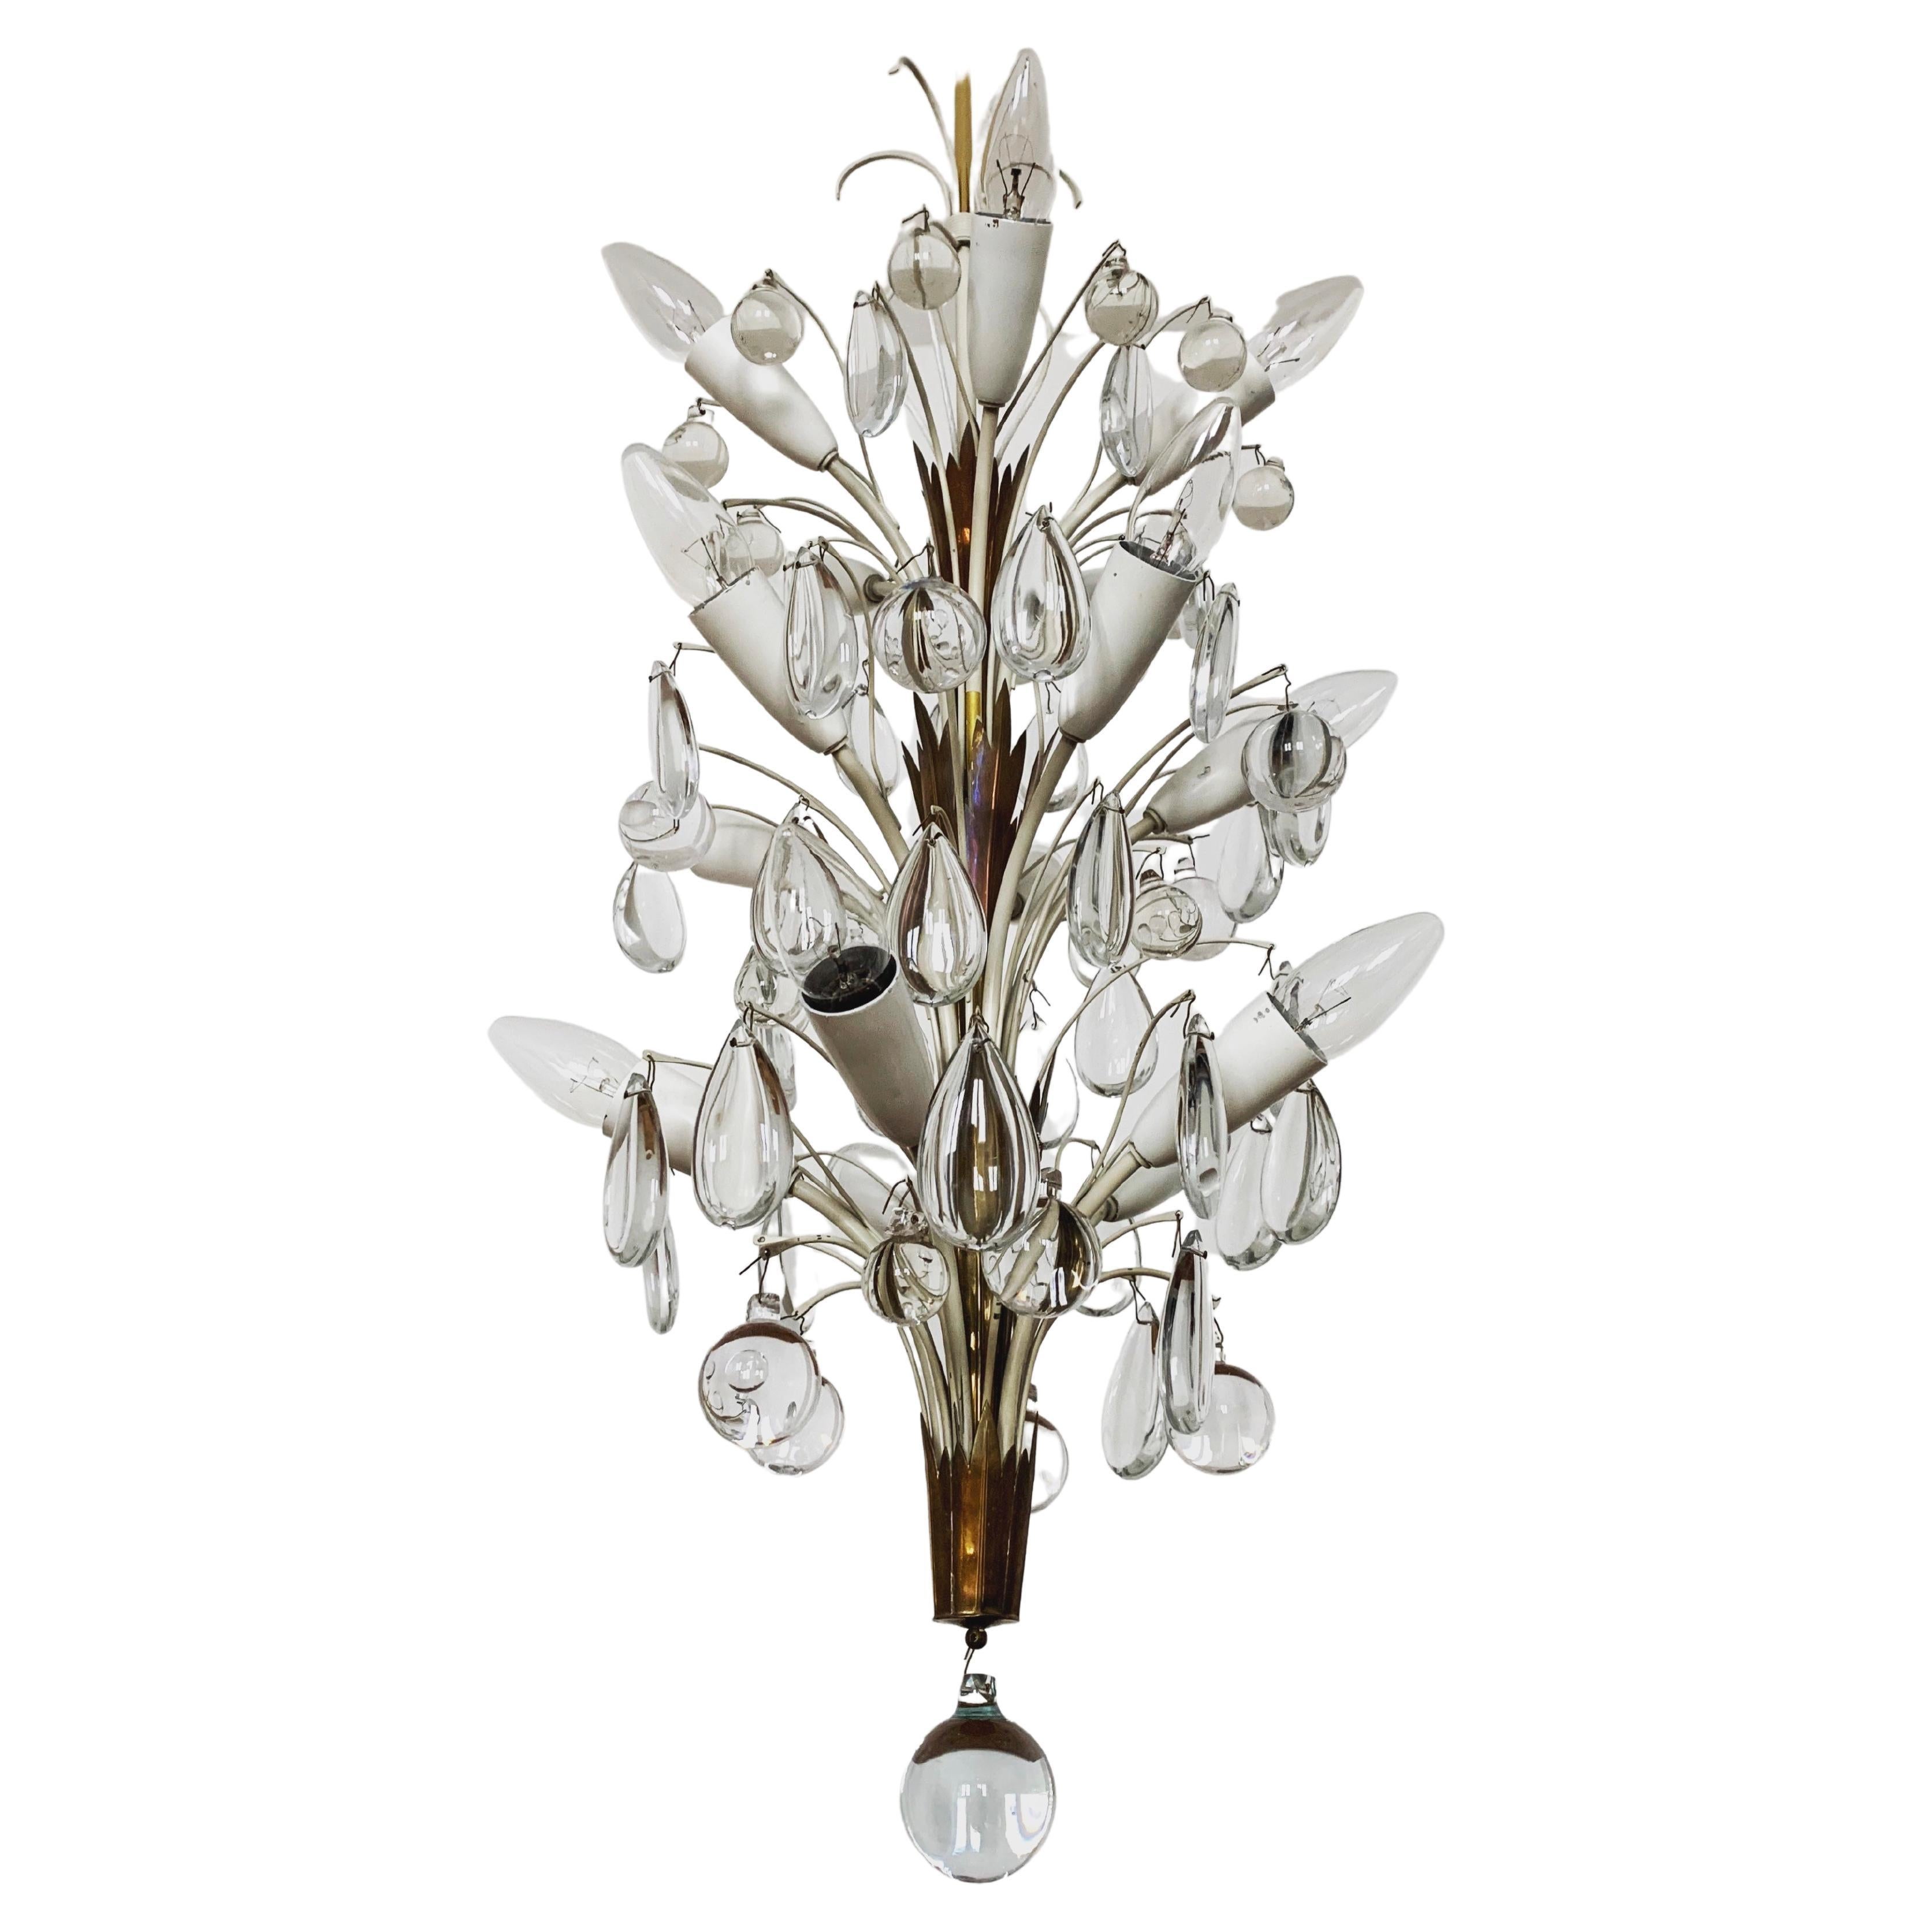 Crystal glass chandelier by Vereinigte Werkstätten München For Sale